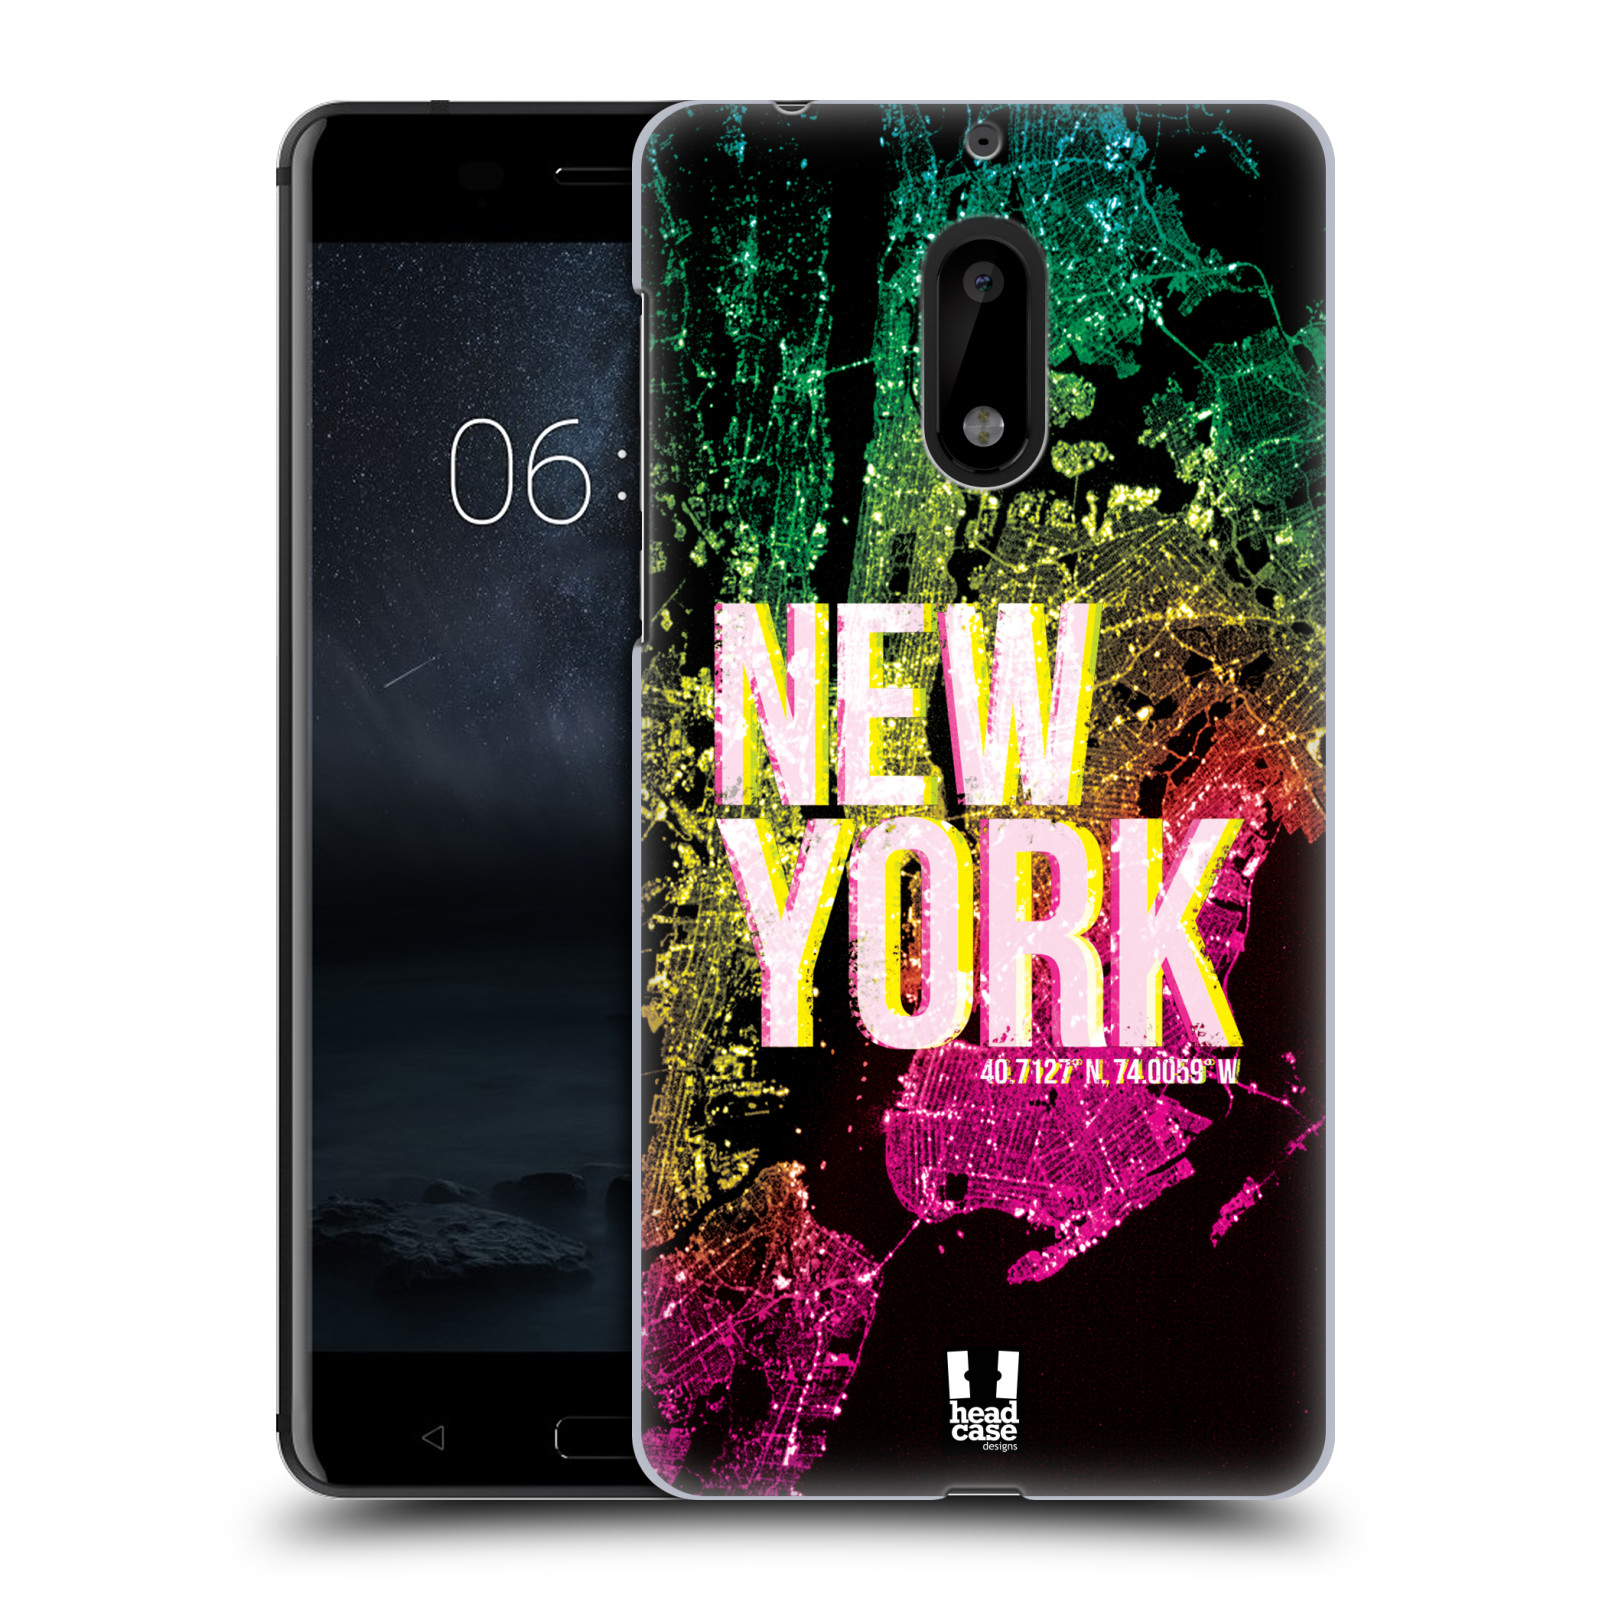 HEAD CASE plastový obal na mobil Nokia 6 vzor Světla známých měst, Satelitní snímky USA, NEW YORK